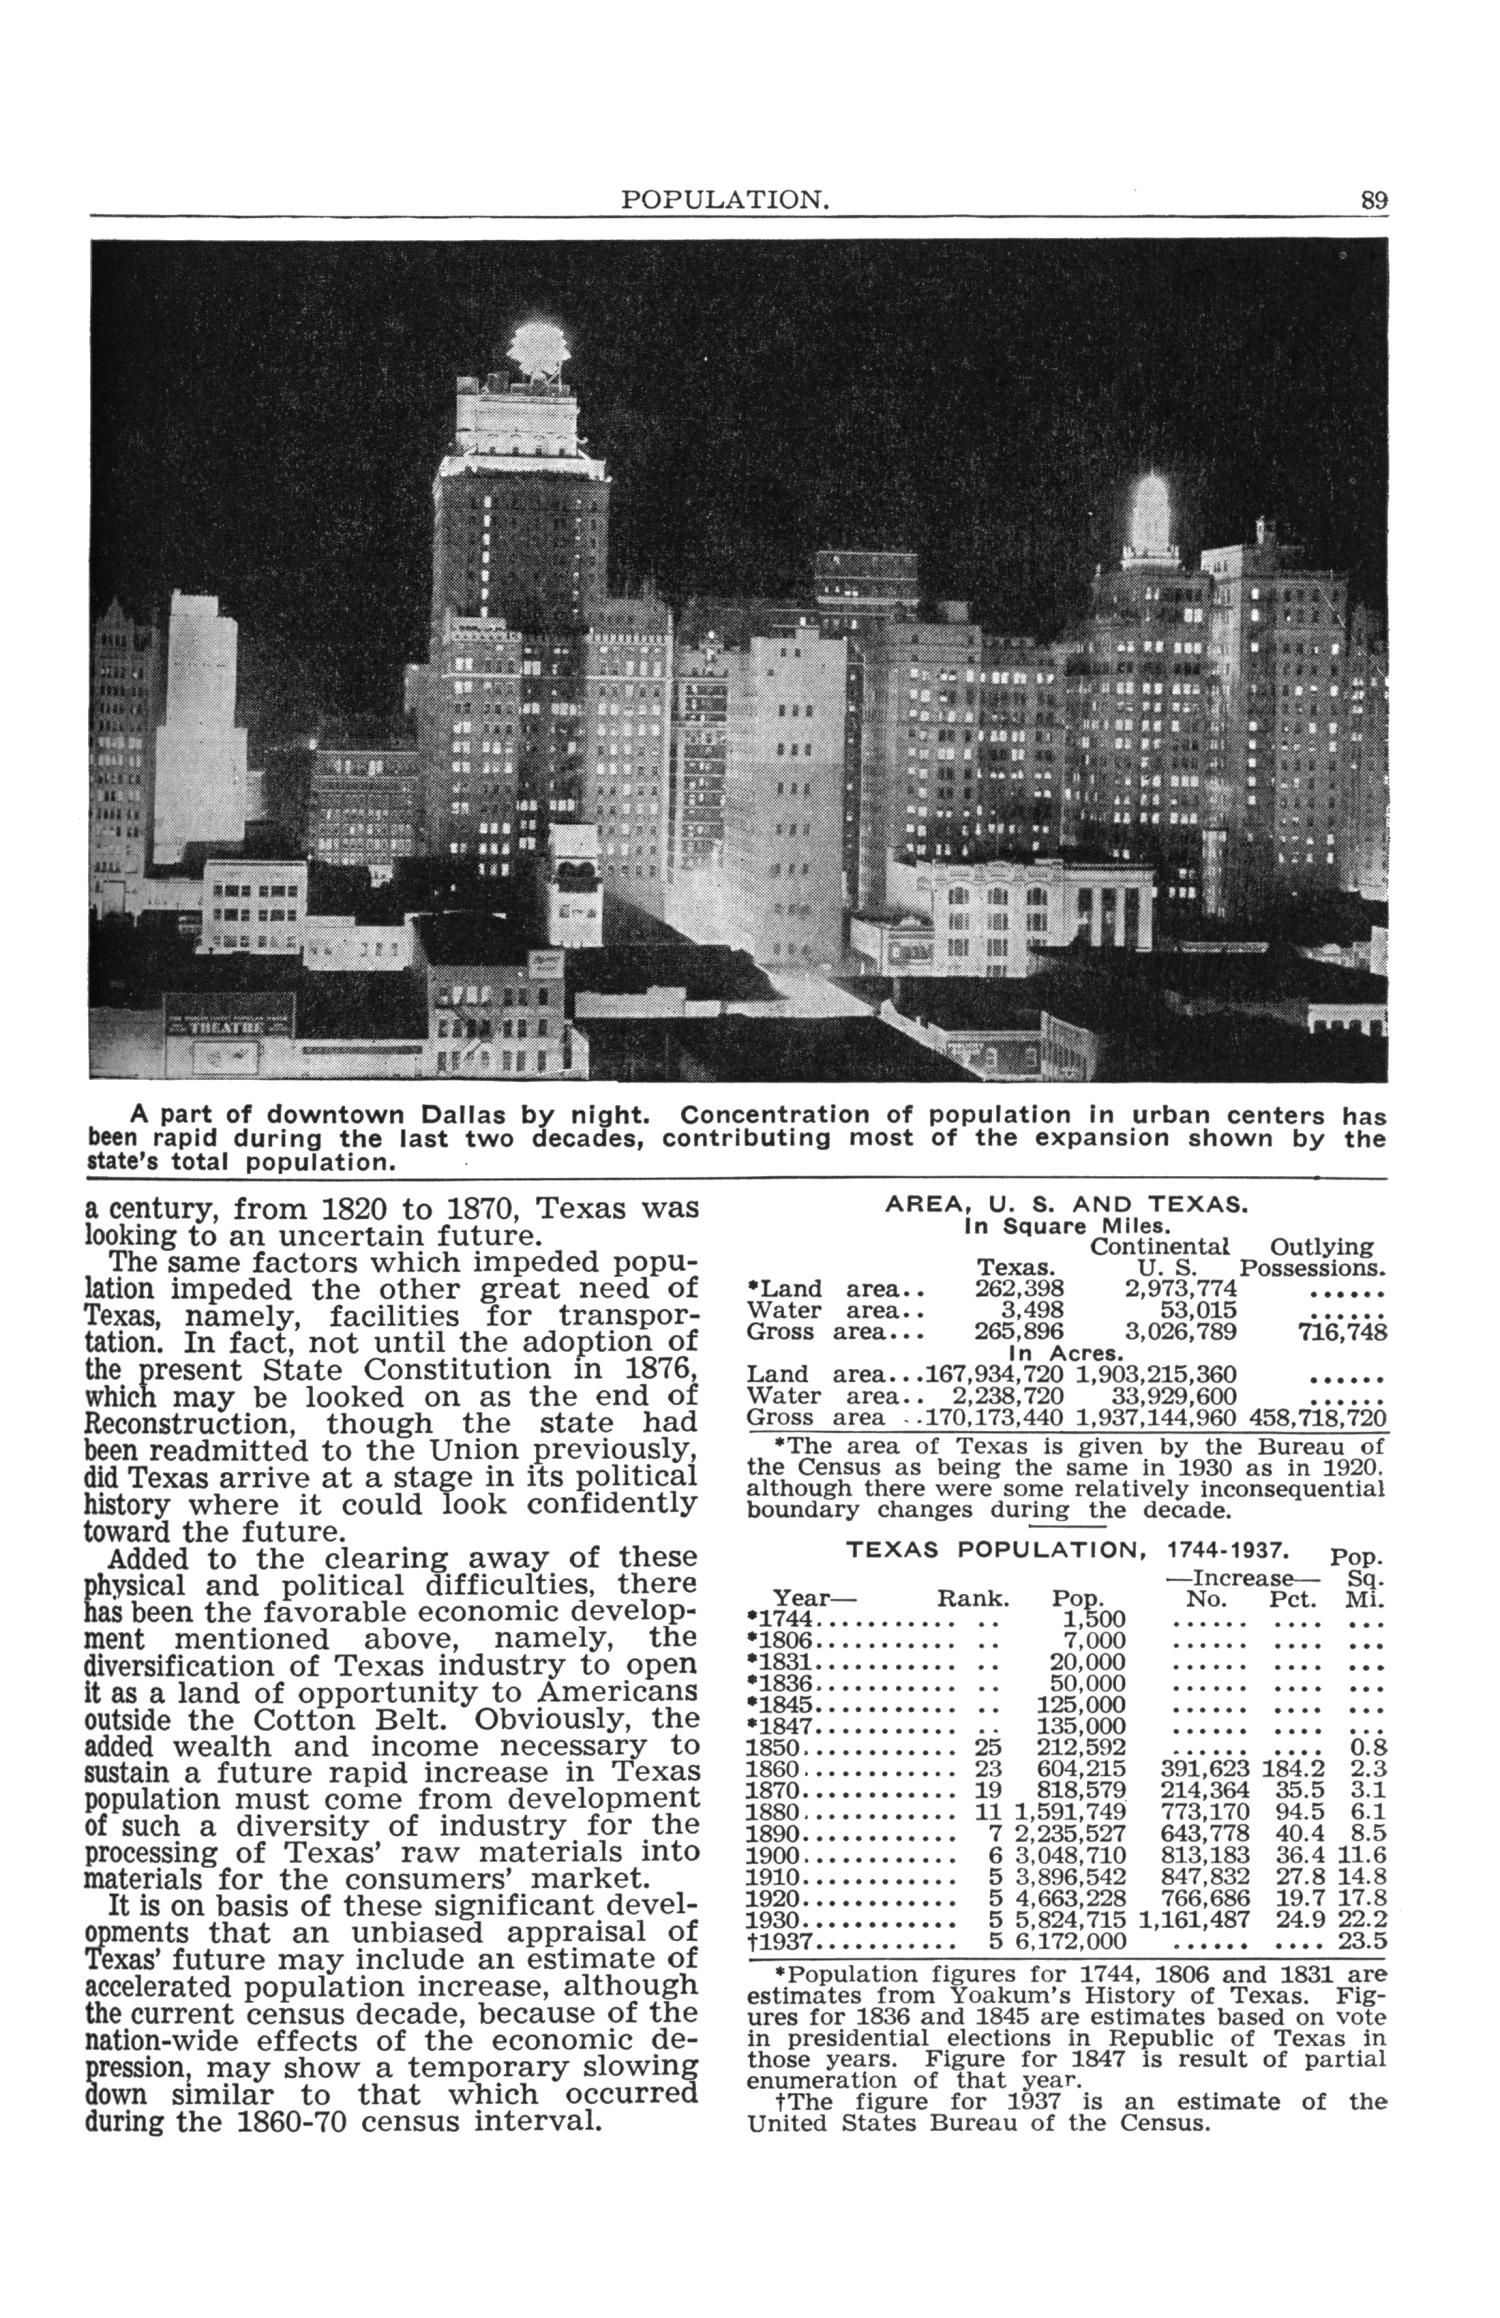 Texas Almanac, 1939-1940
                                                
                                                    89
                                                